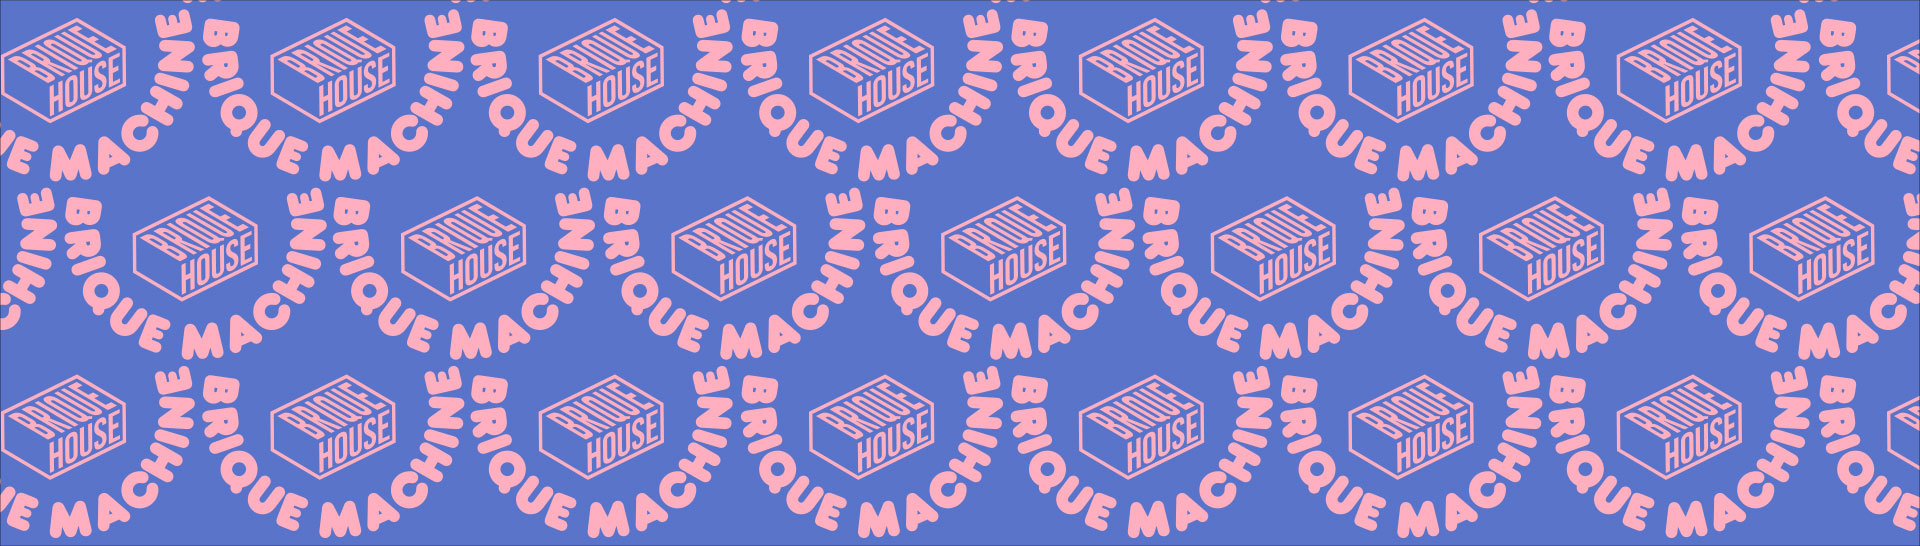 Brique Machine - Brique House